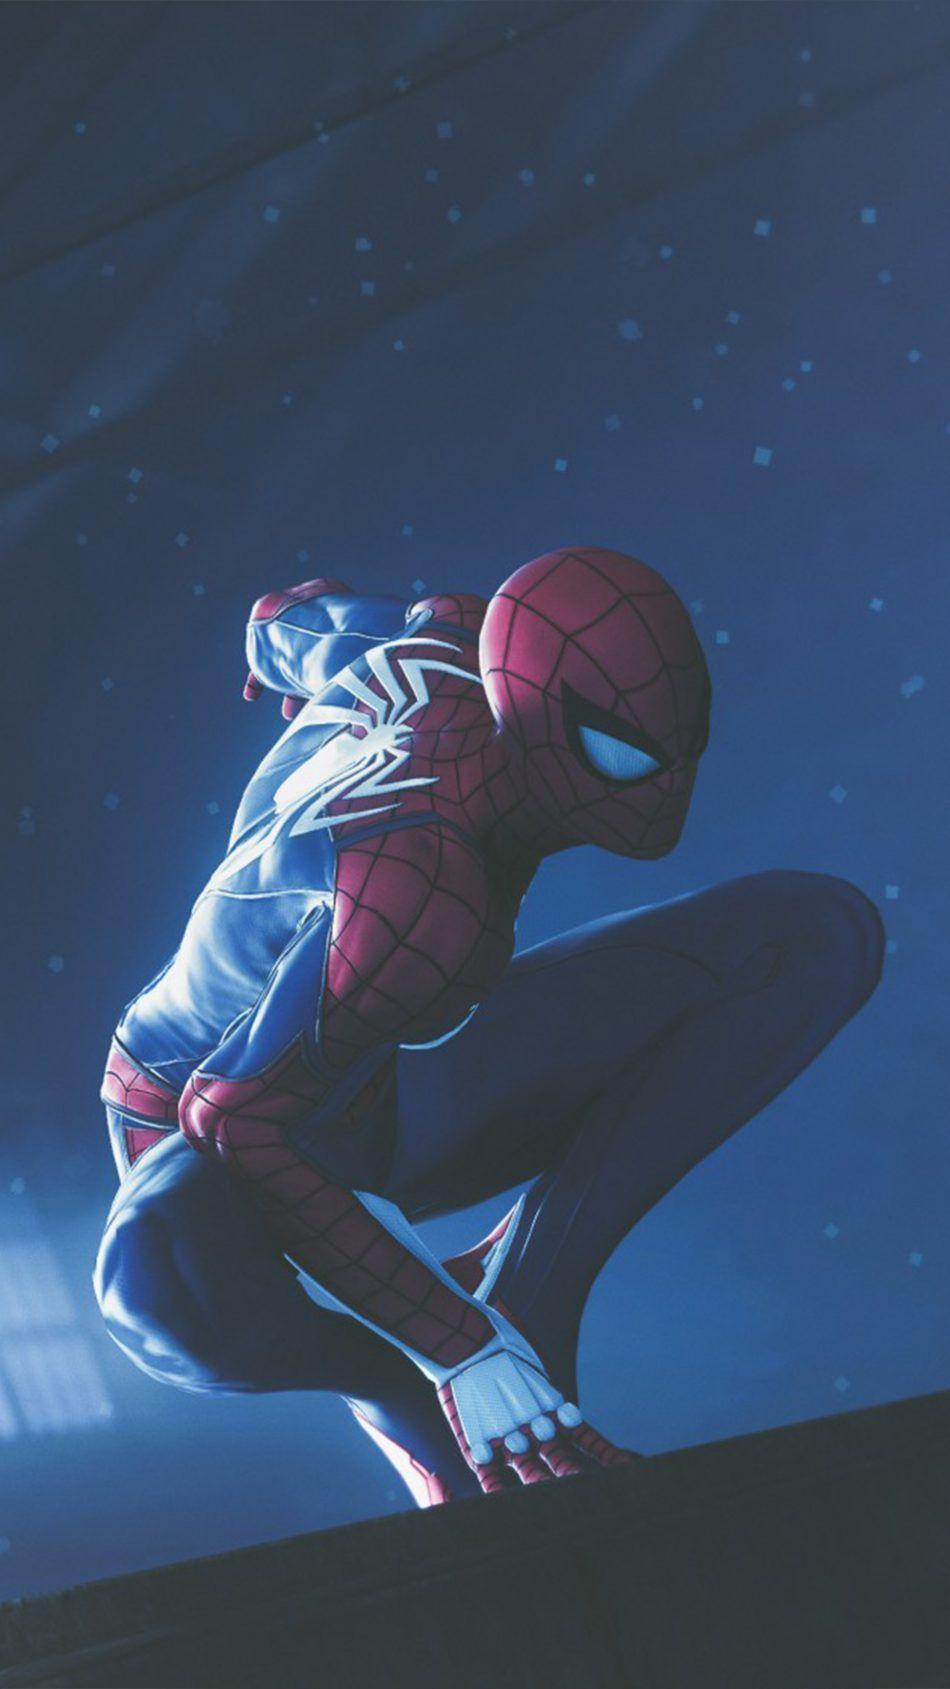 Spider Man PS4 2018. Spiderman, Spiderman art, Amazing spiderman